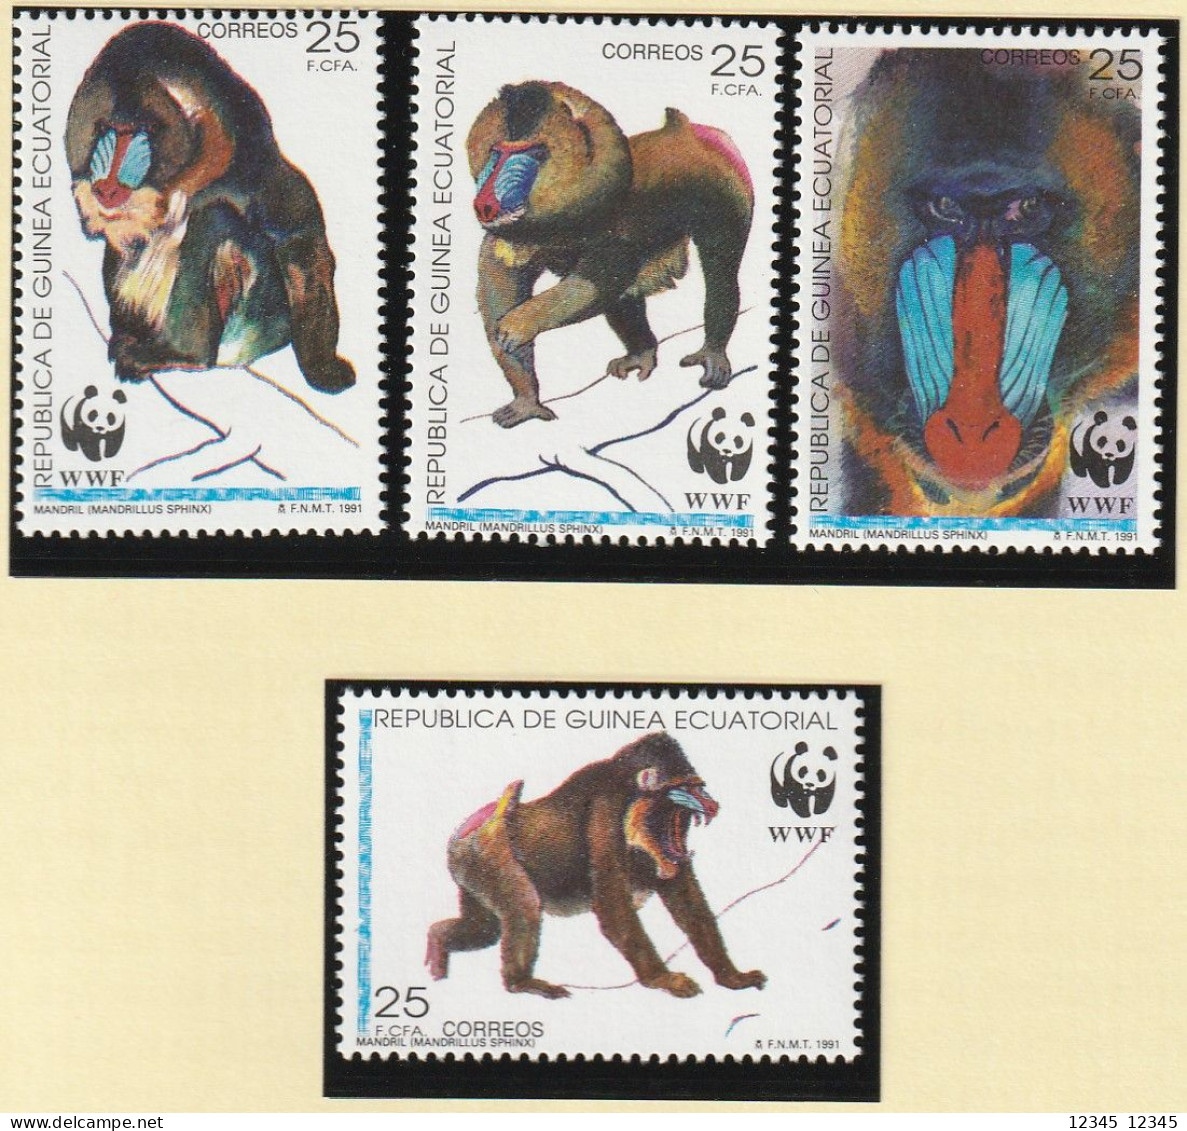 Equatoriaal Guinea 1991, Postfris MNH, WWF, Mandrill - Guinea Equatoriale